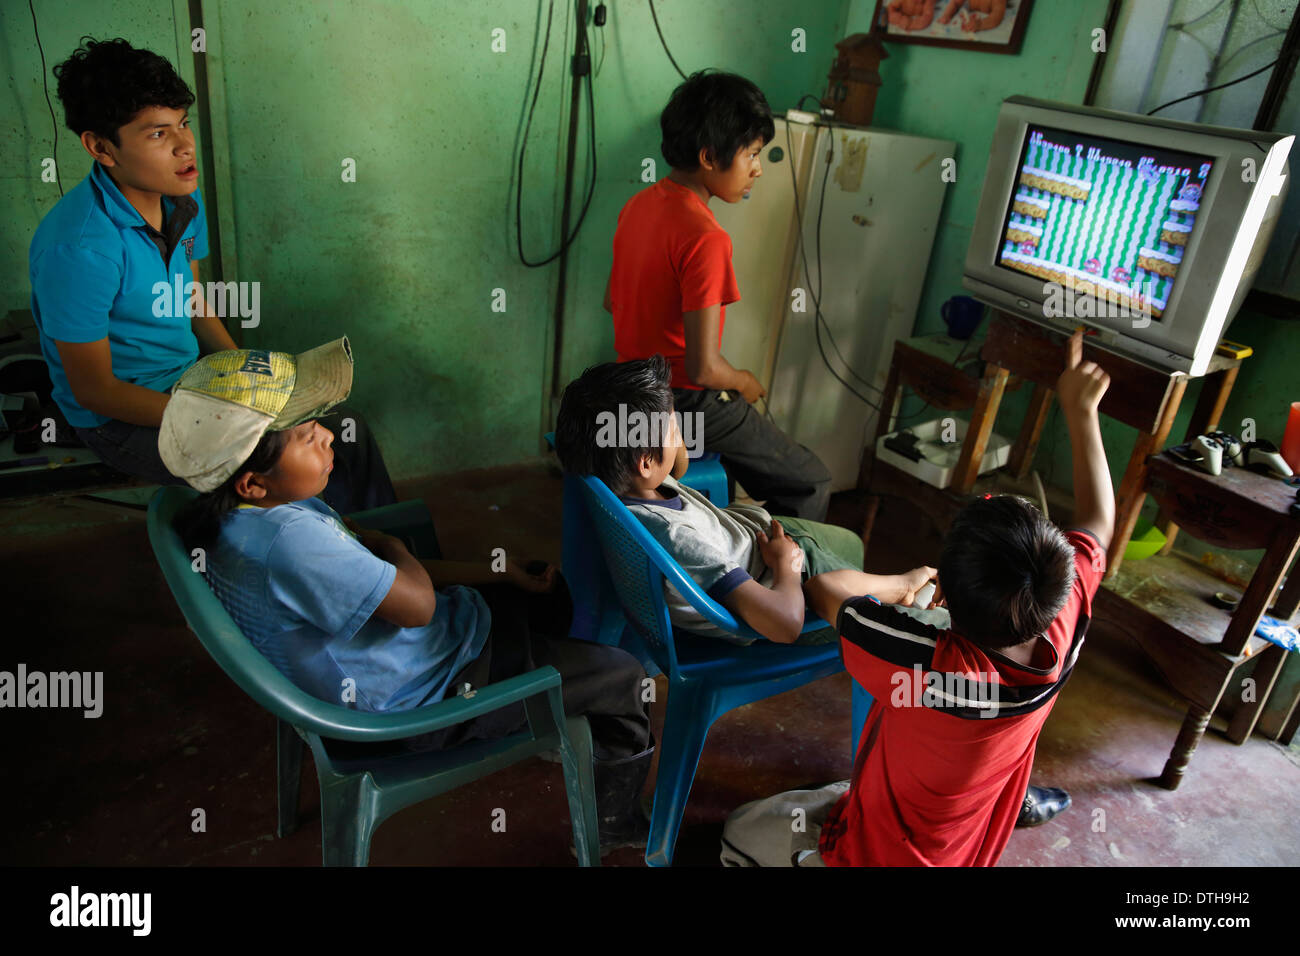 Boys playing video game, San Ramon, Nicaragua Stock Photo